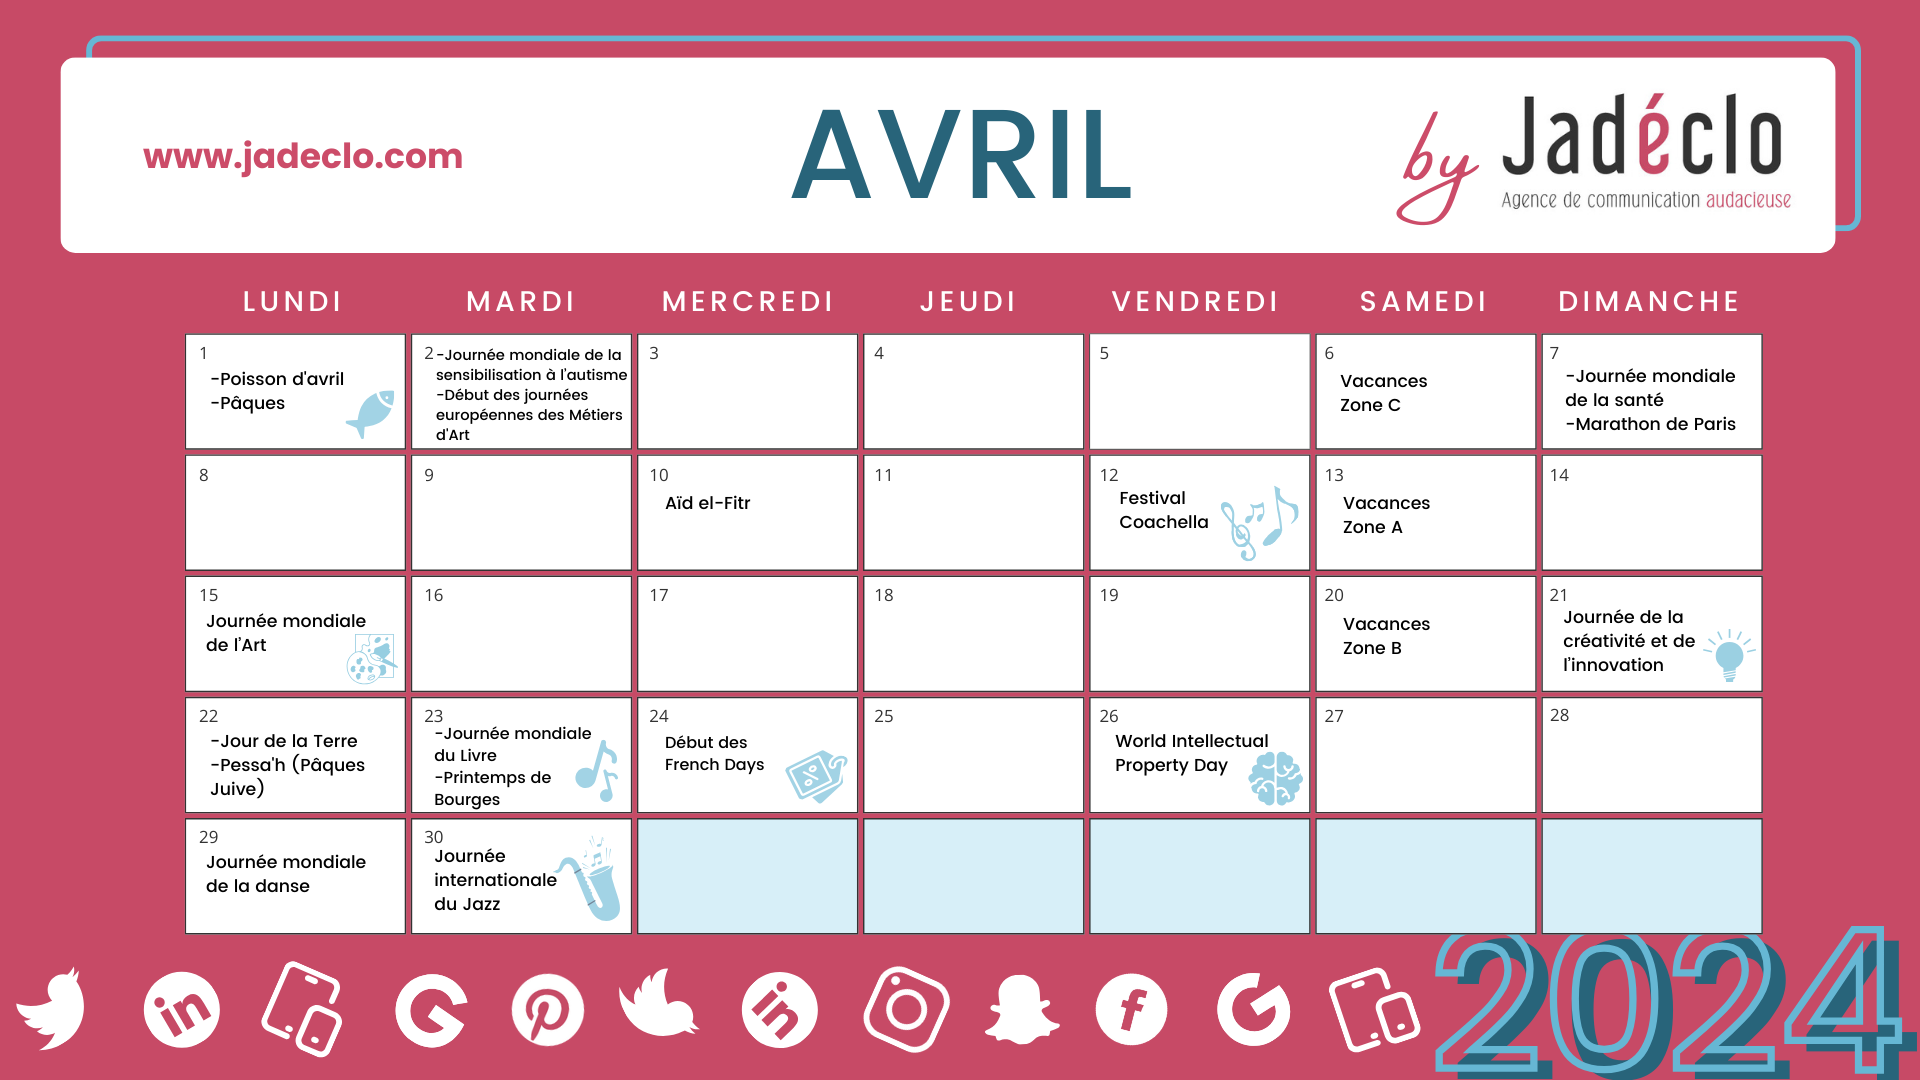 Retrouvez tous les événements clés du mois d'avril grâce à votre calendrier marronnier avril 2024 !